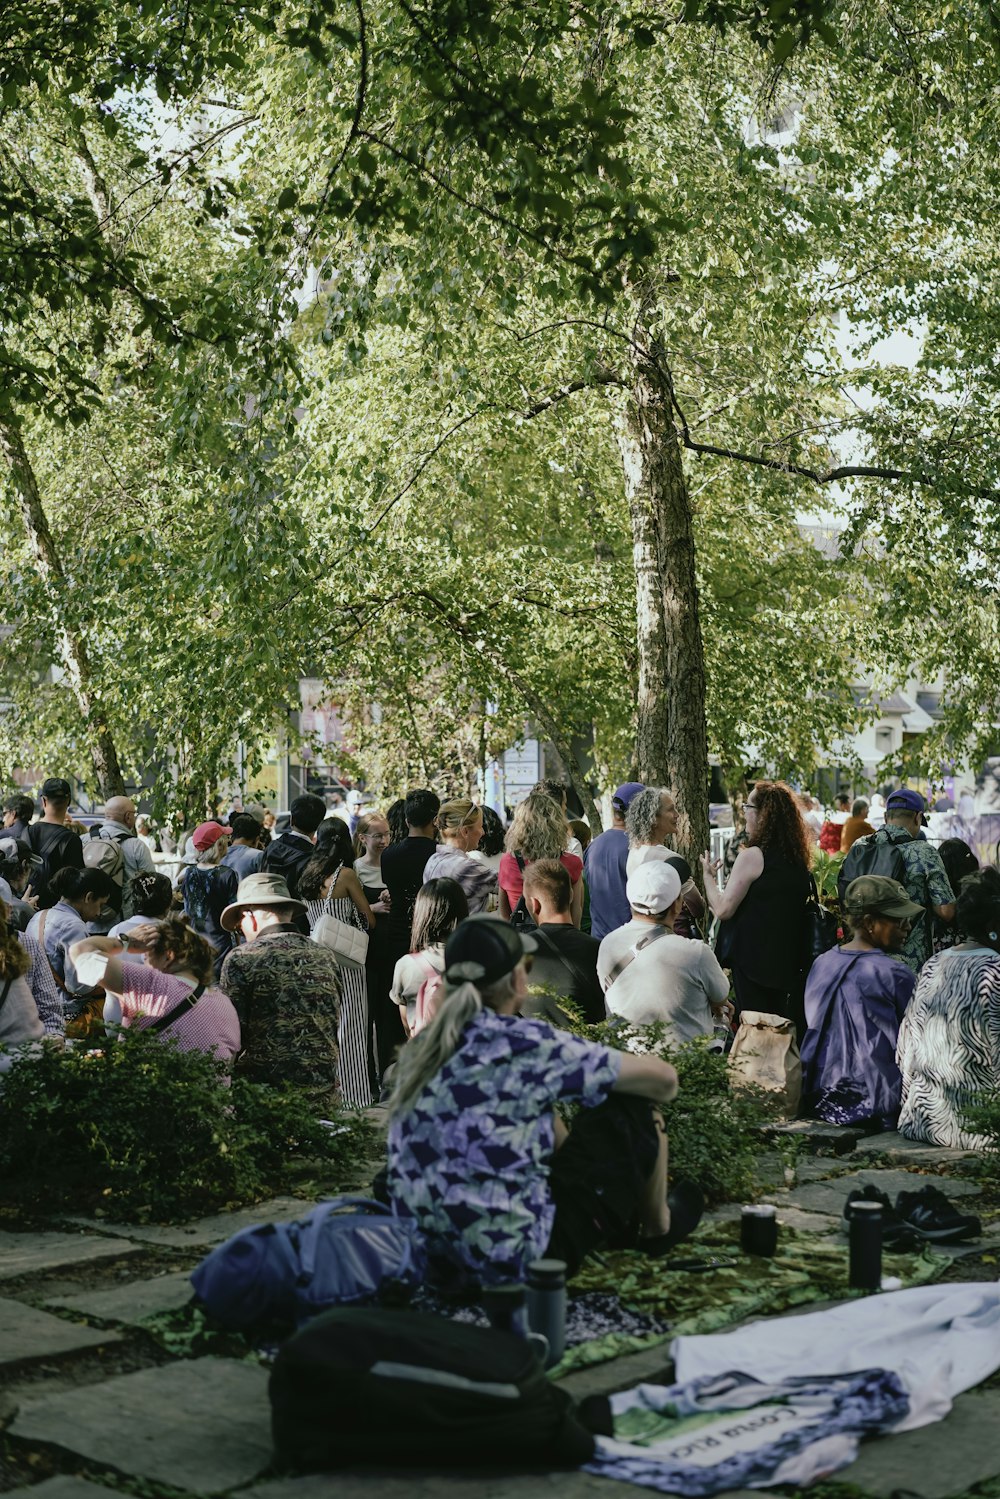 Un grupo de personas sentadas en el suelo debajo de un árbol